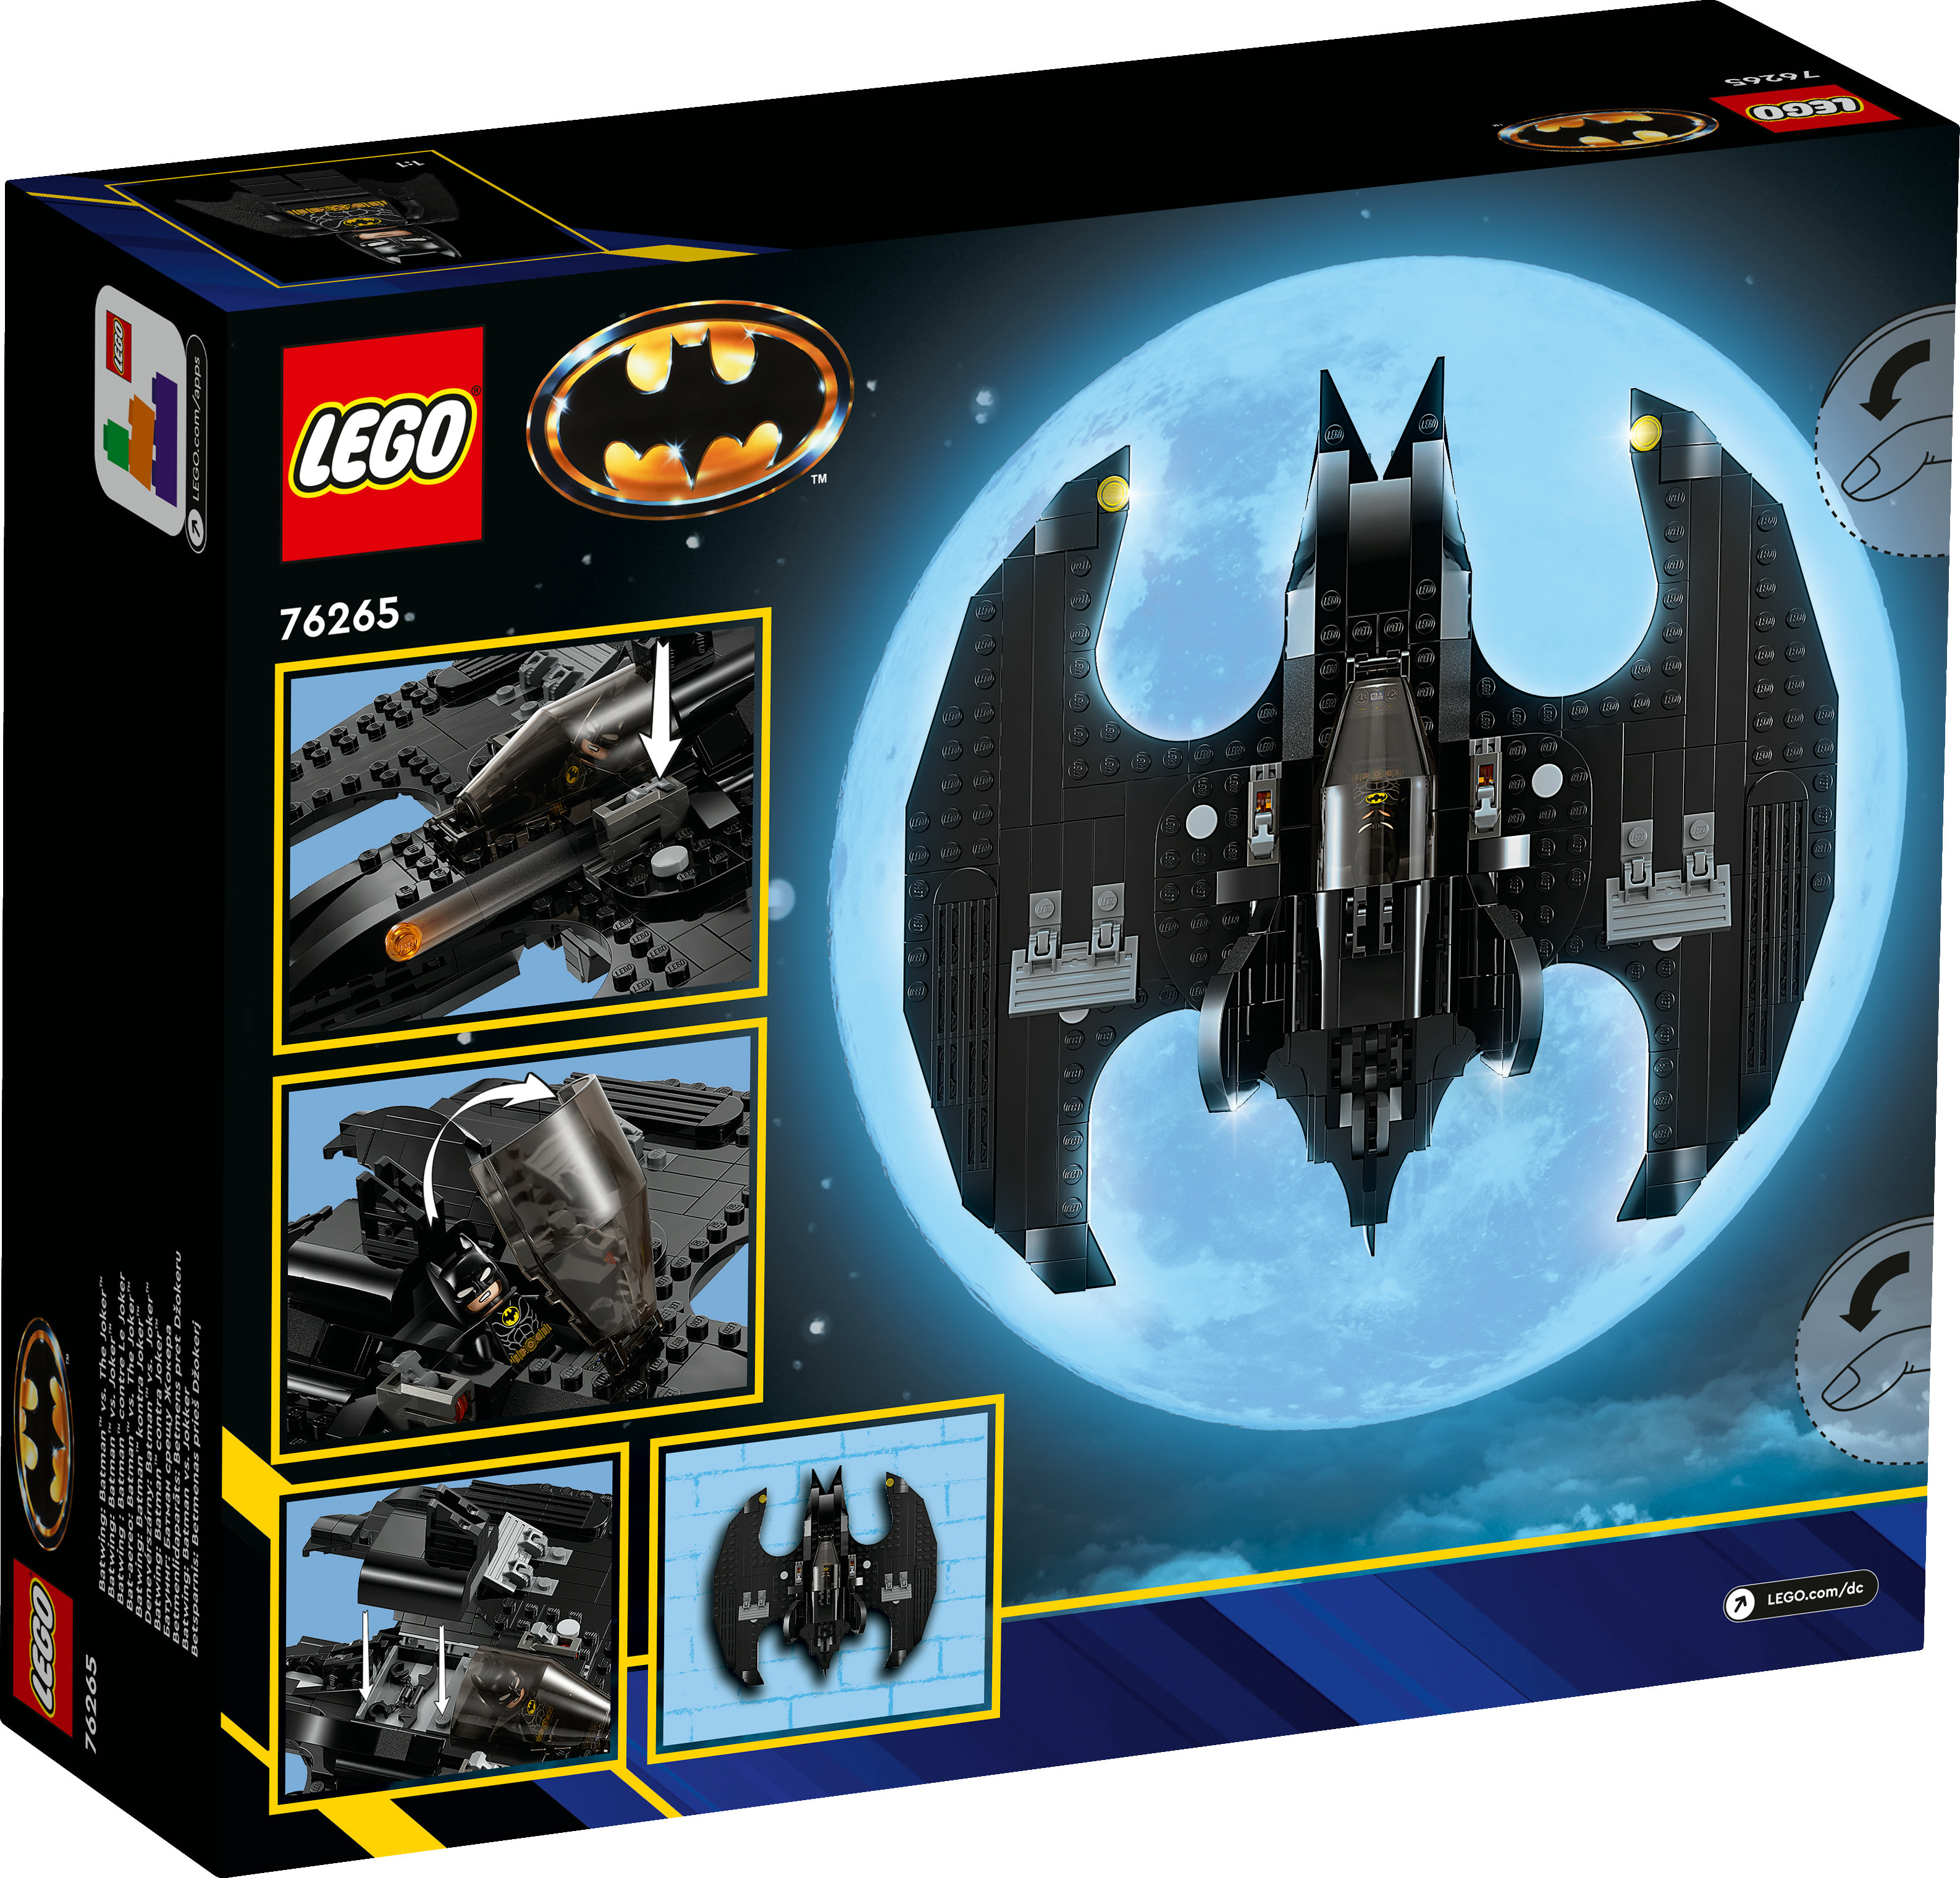 LEGO DC Comics Super Heroes 76265 Batwing Batman vs Joker